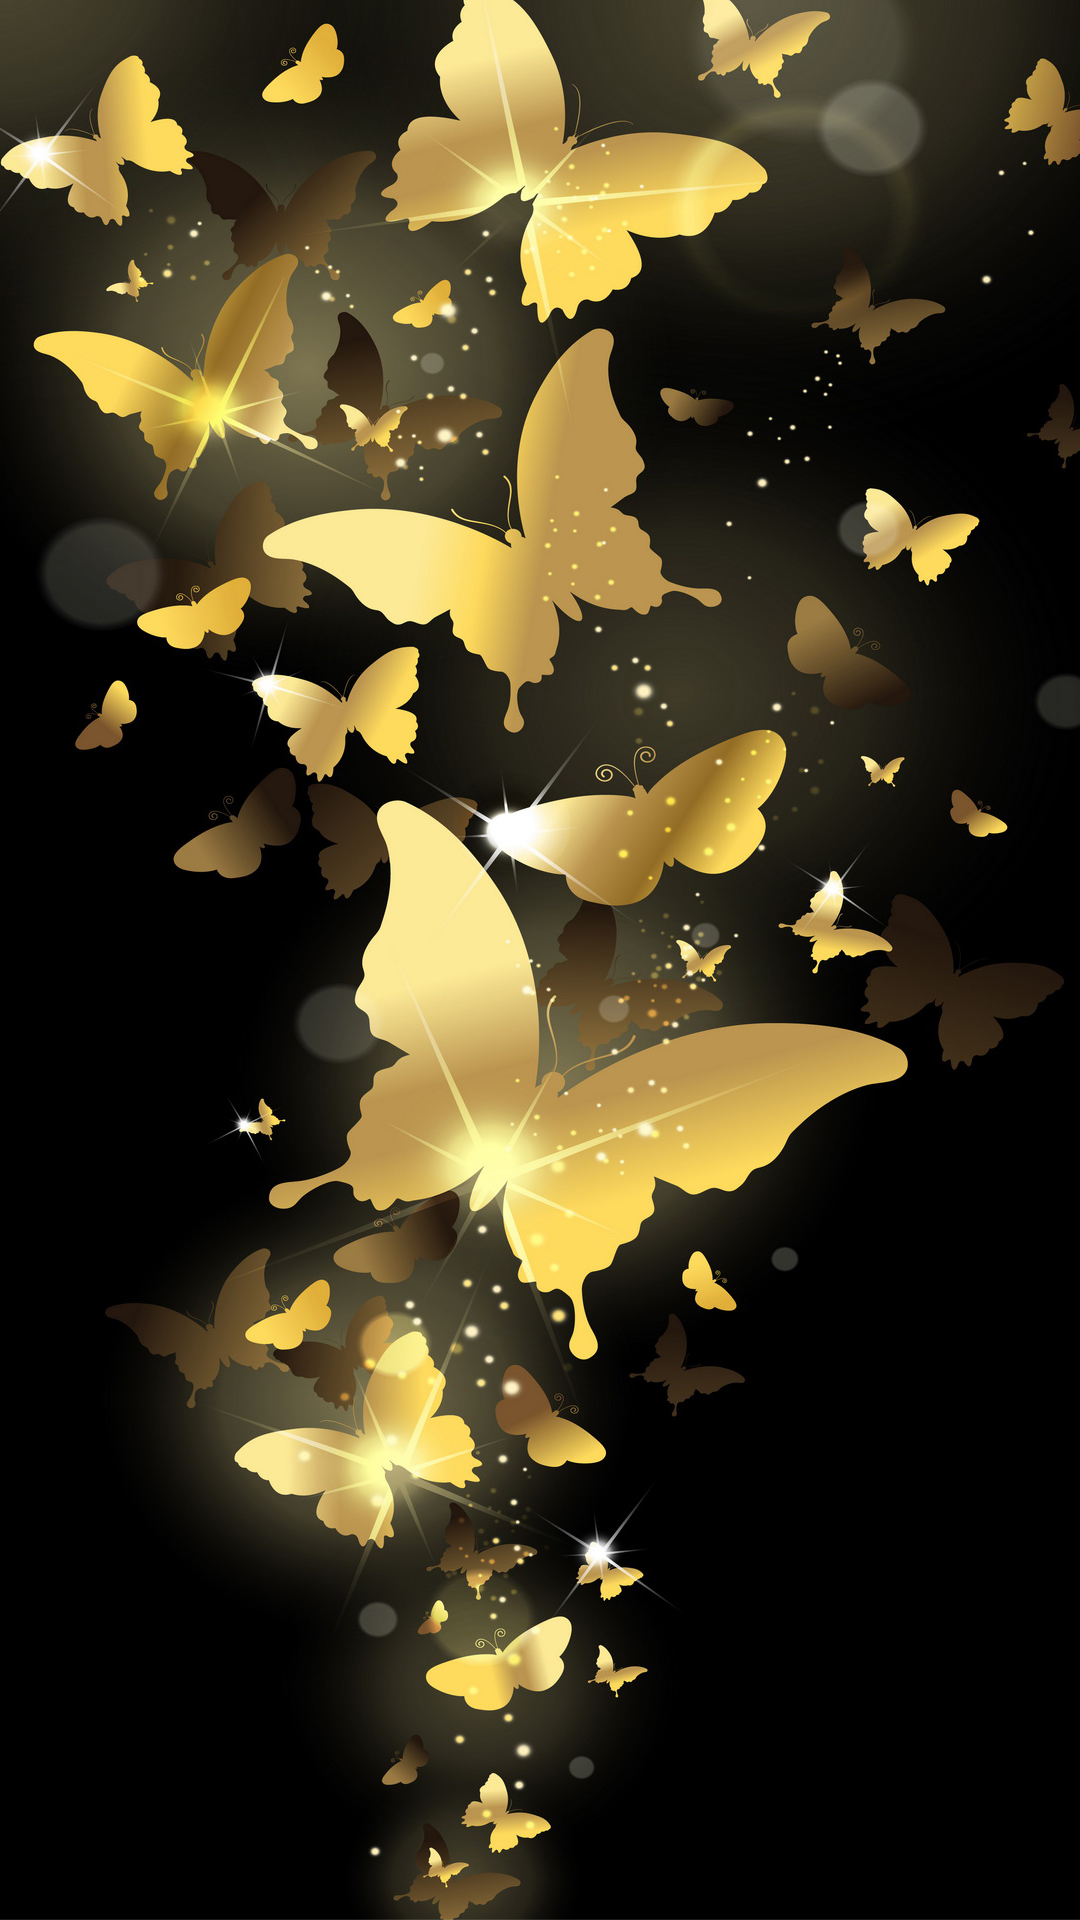 Flying Golden Butterflies Lockscreen Android Wallpaper